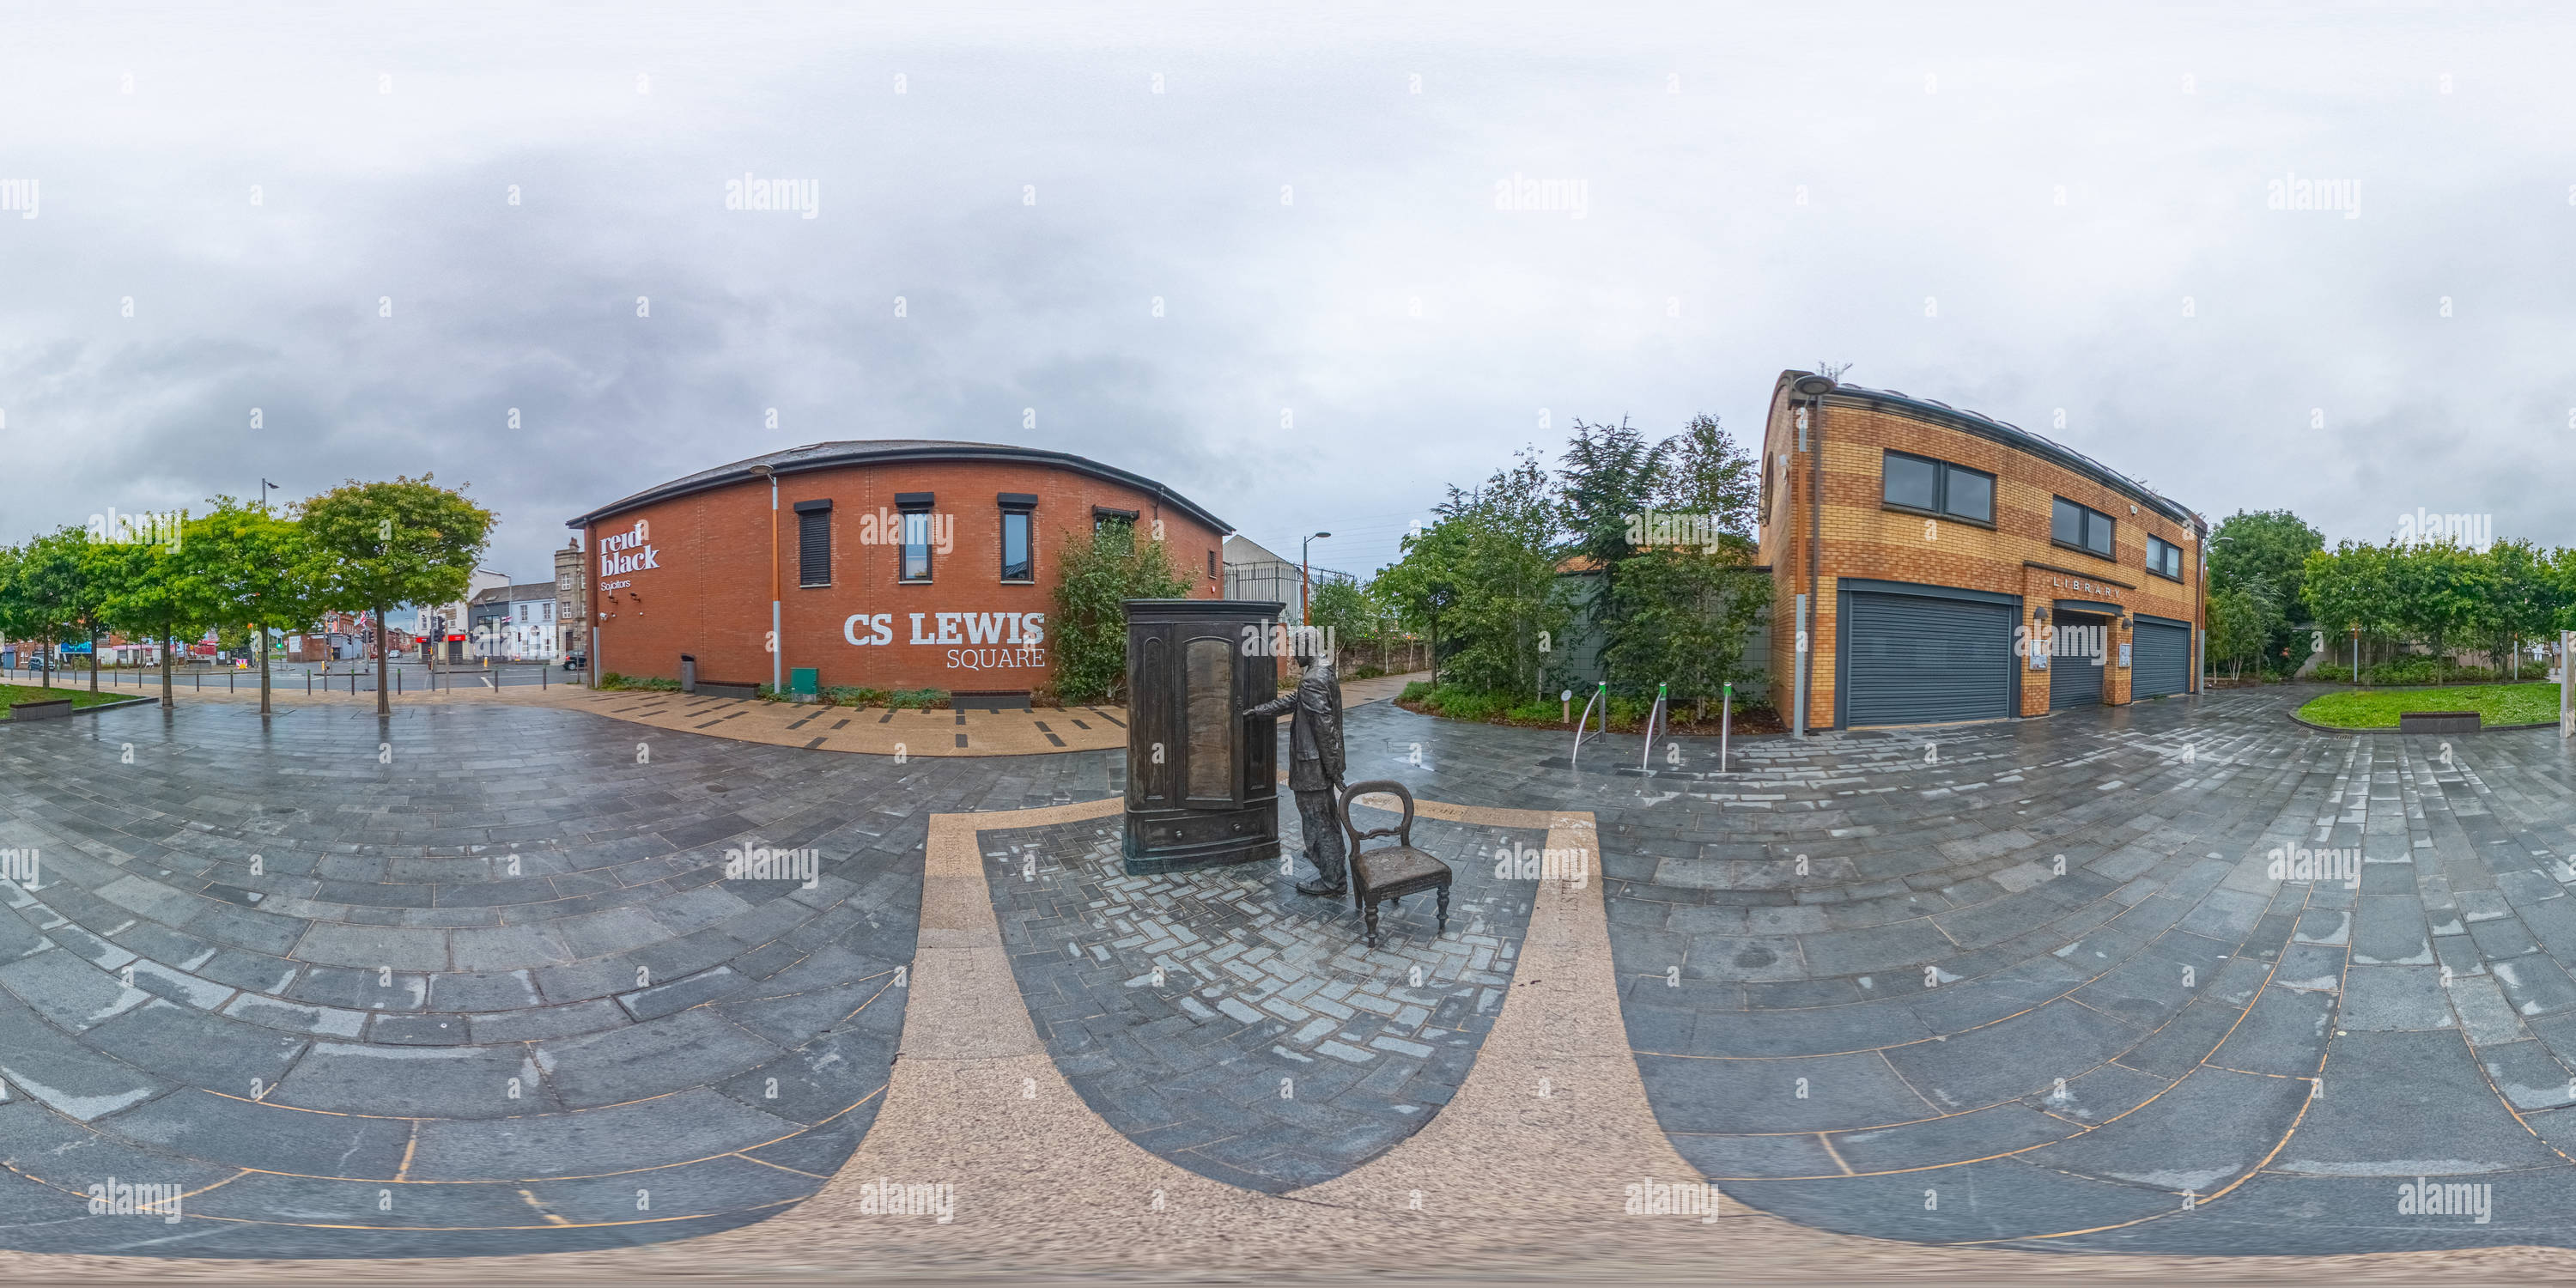 Vue panoramique à 360° de The Searcher, Wardrobe Statue, CS Lewis Square, East Belfast, Irlande du Nord